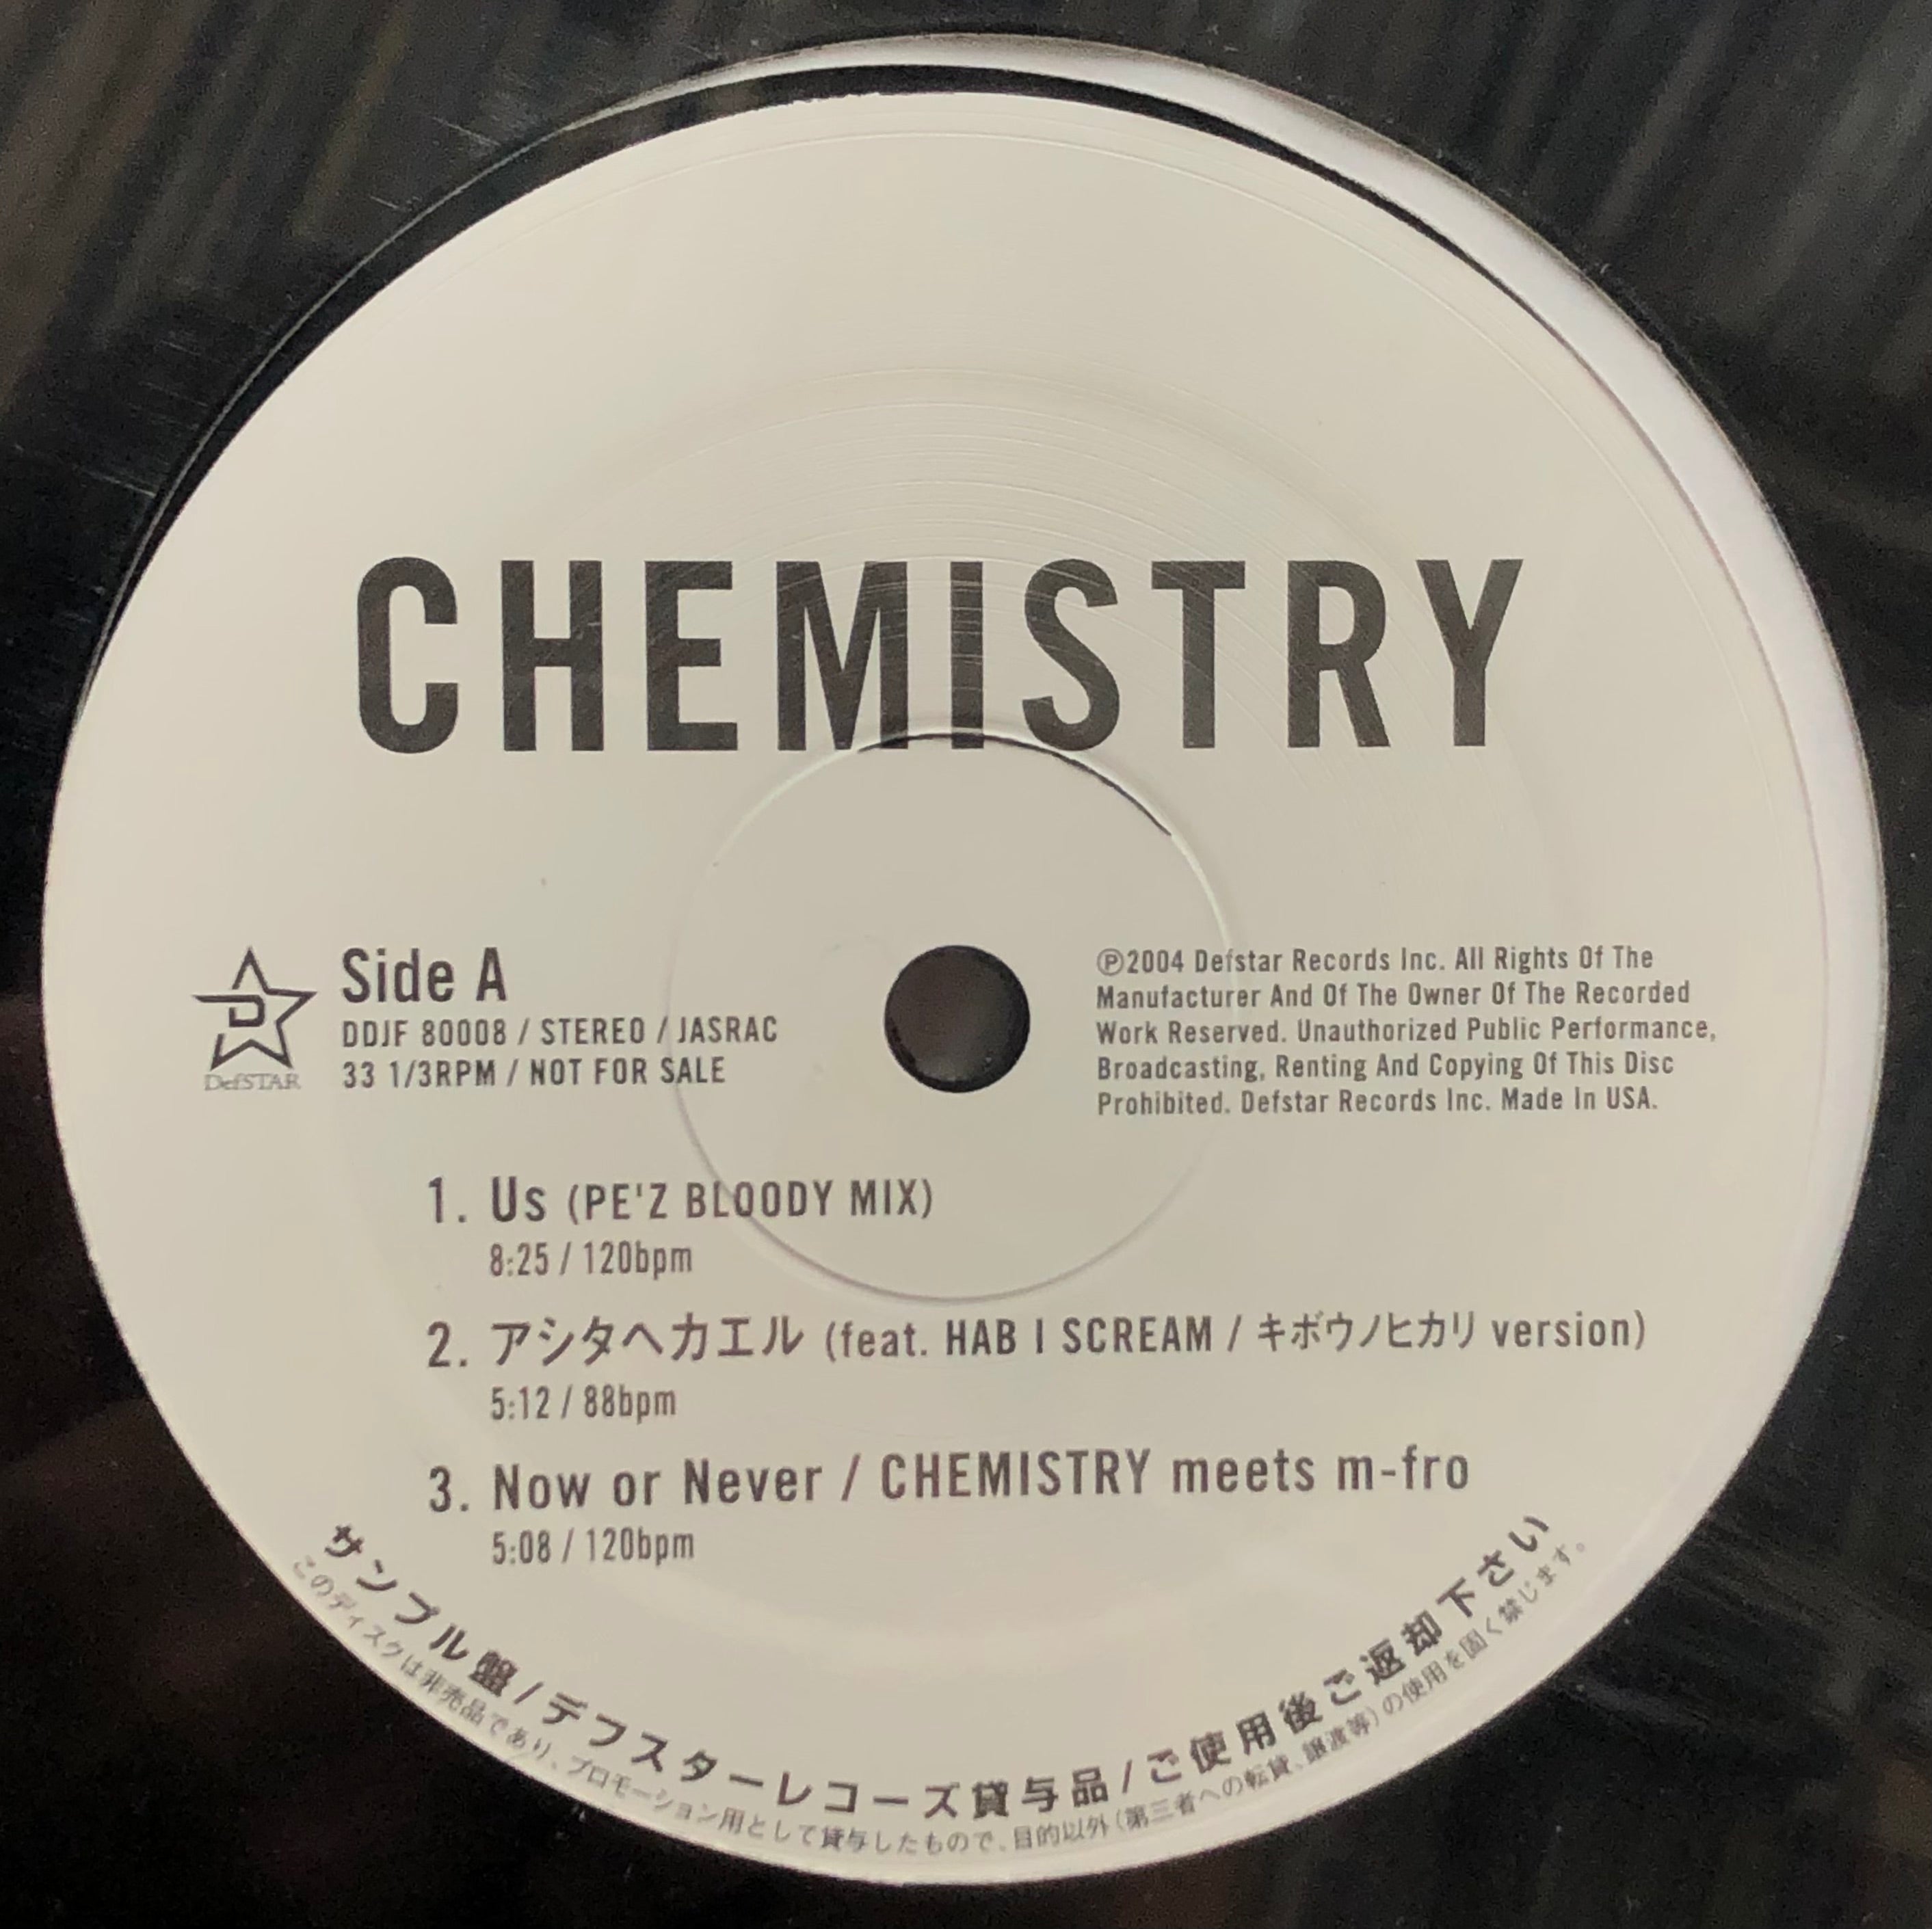 CHEMISTRY / Promo Sampler (incl. Us